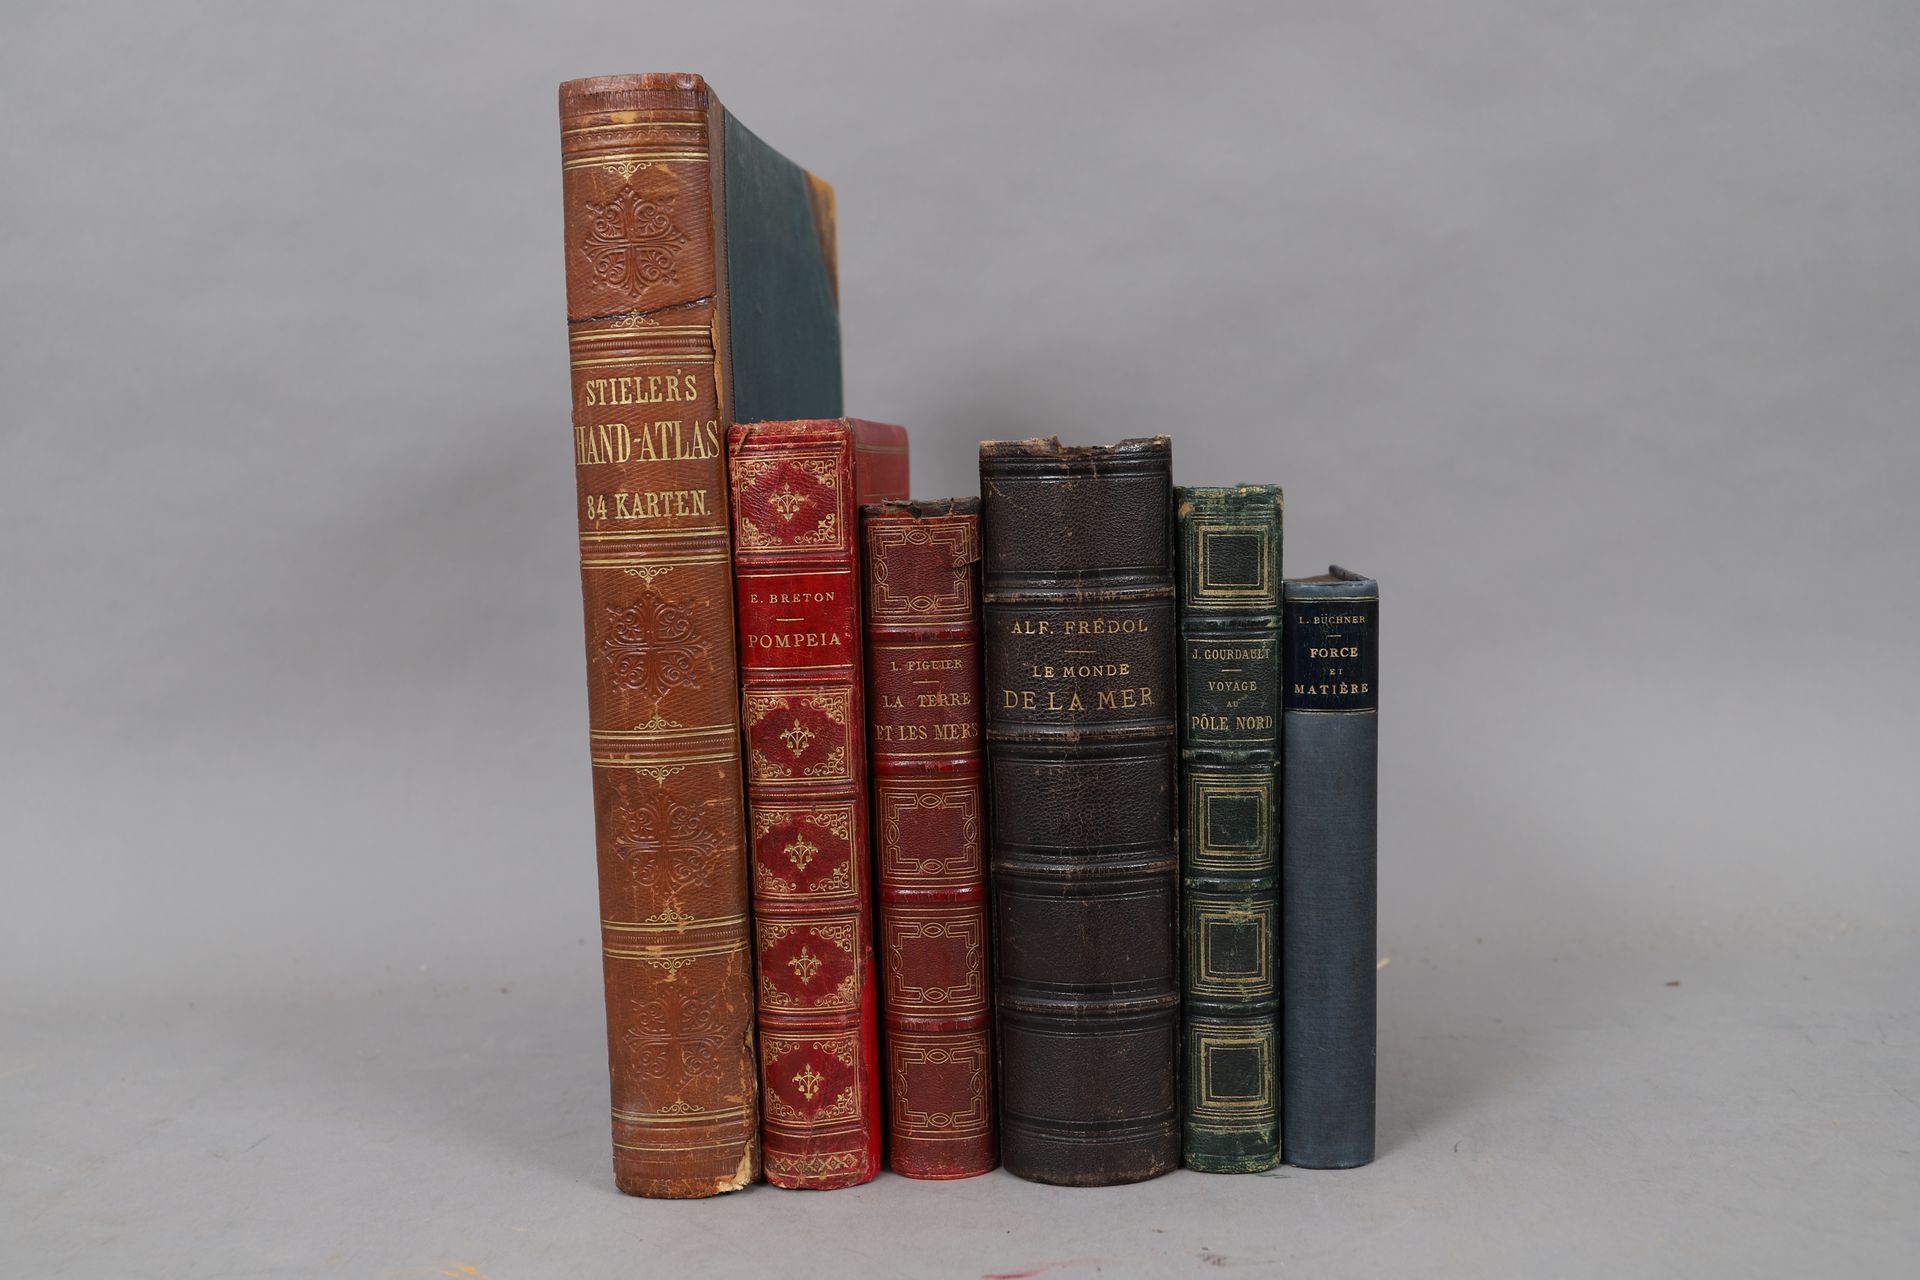 Null REISE und GEOGRAPHIE

LOT von 6 gebundenen Bänden

19. Und 20. Jahrhundert